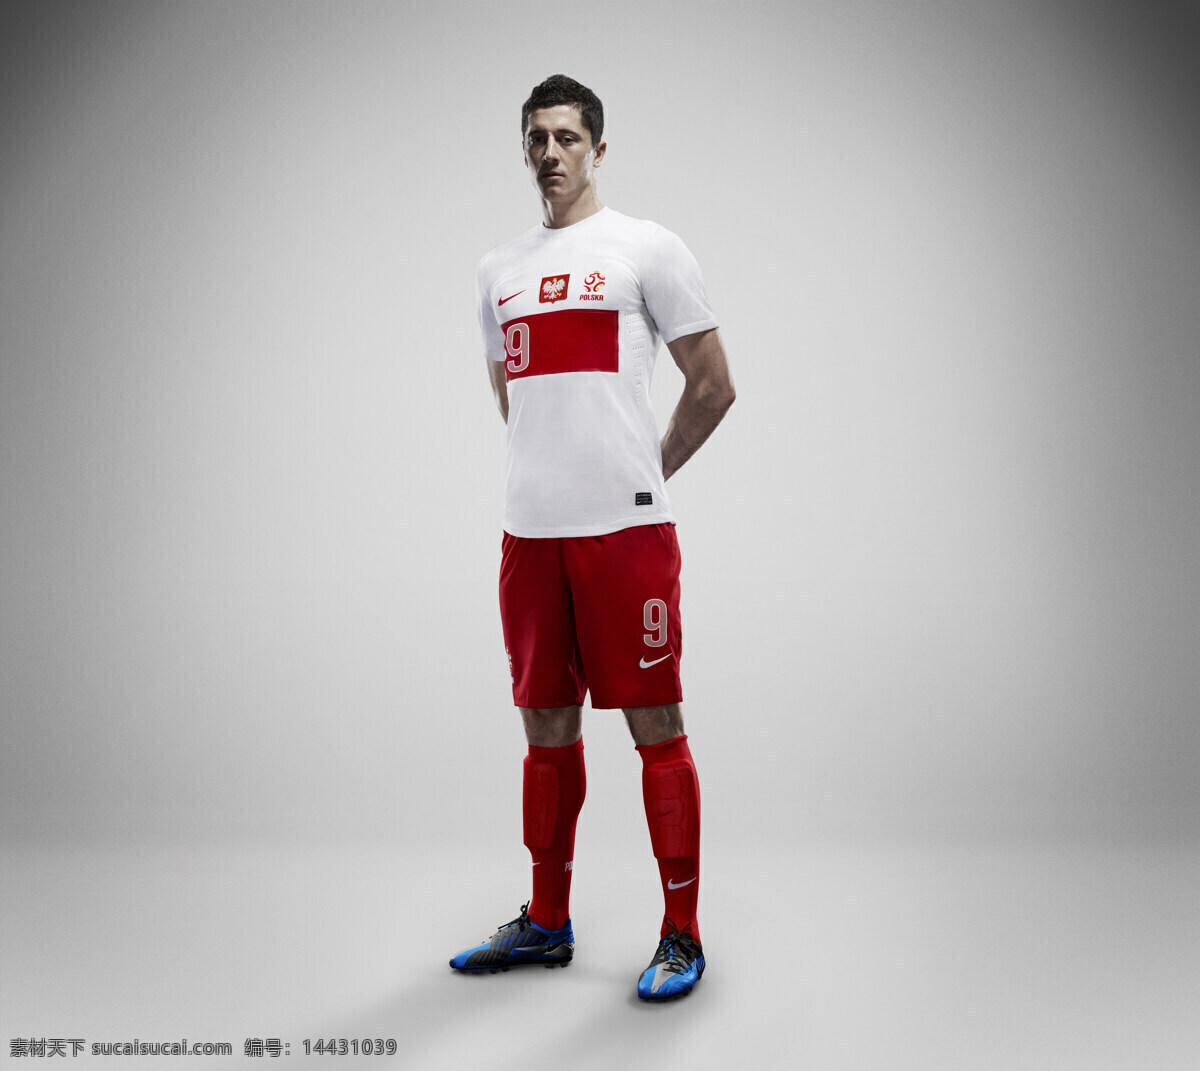 nike 足球 系列 广告宣传 平面 平面广告 波兰国家队 球星 职业人物 人物图库